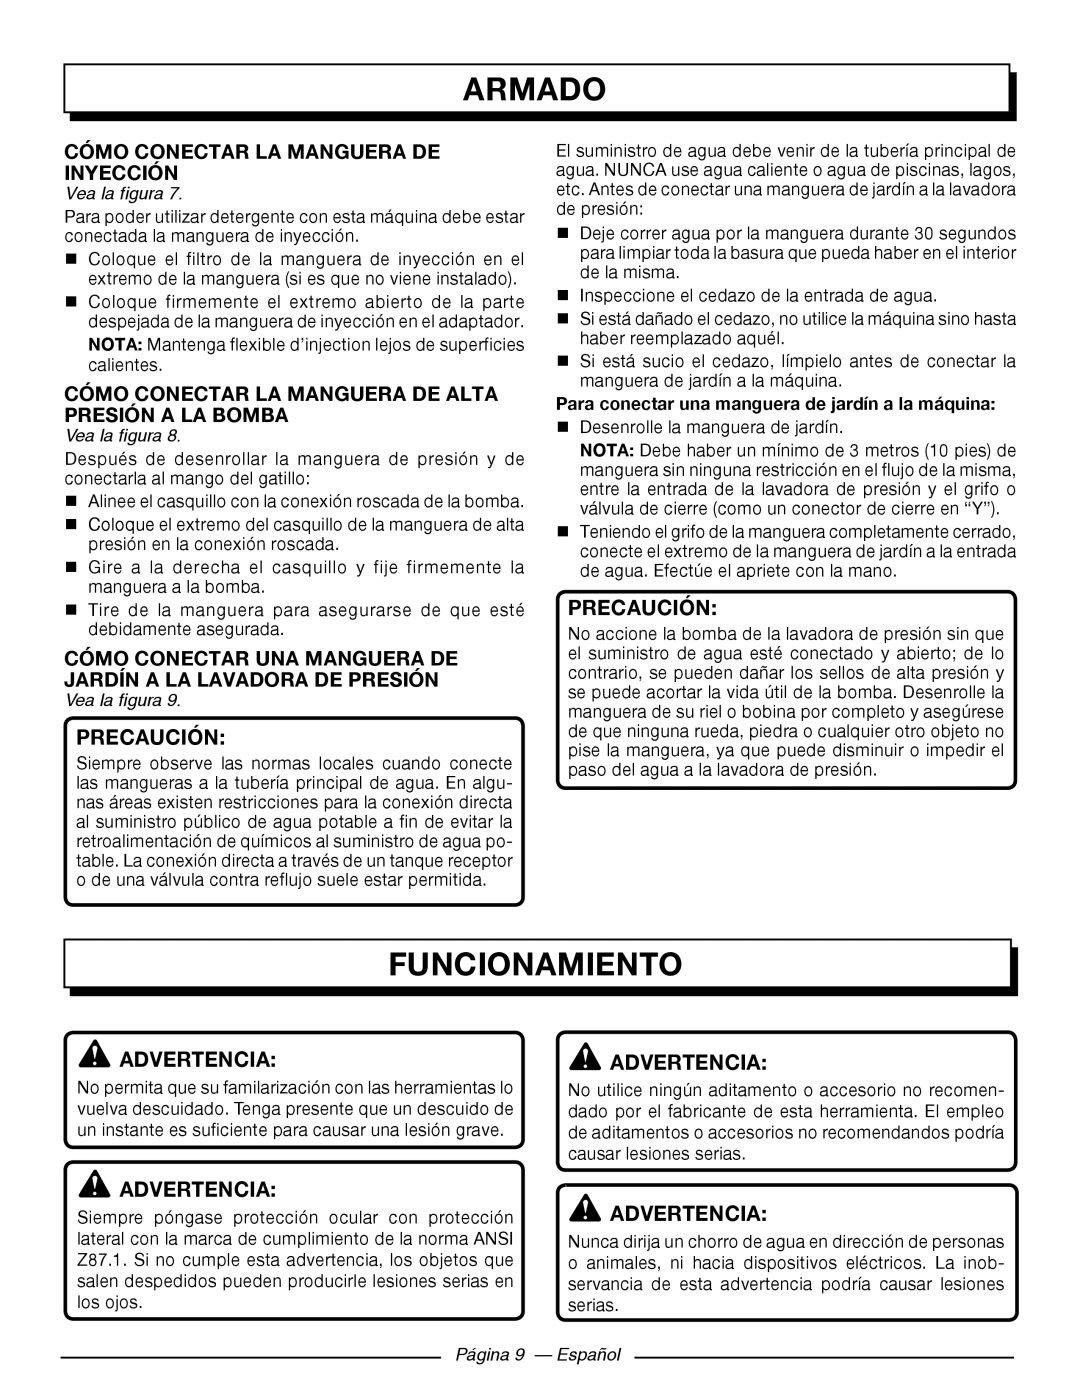 Homelite UT80522, UT80953 Funcionamiento, Cómo Conectar La Manguera De Inyección, Página 9 - Español, Armado, Precaución 